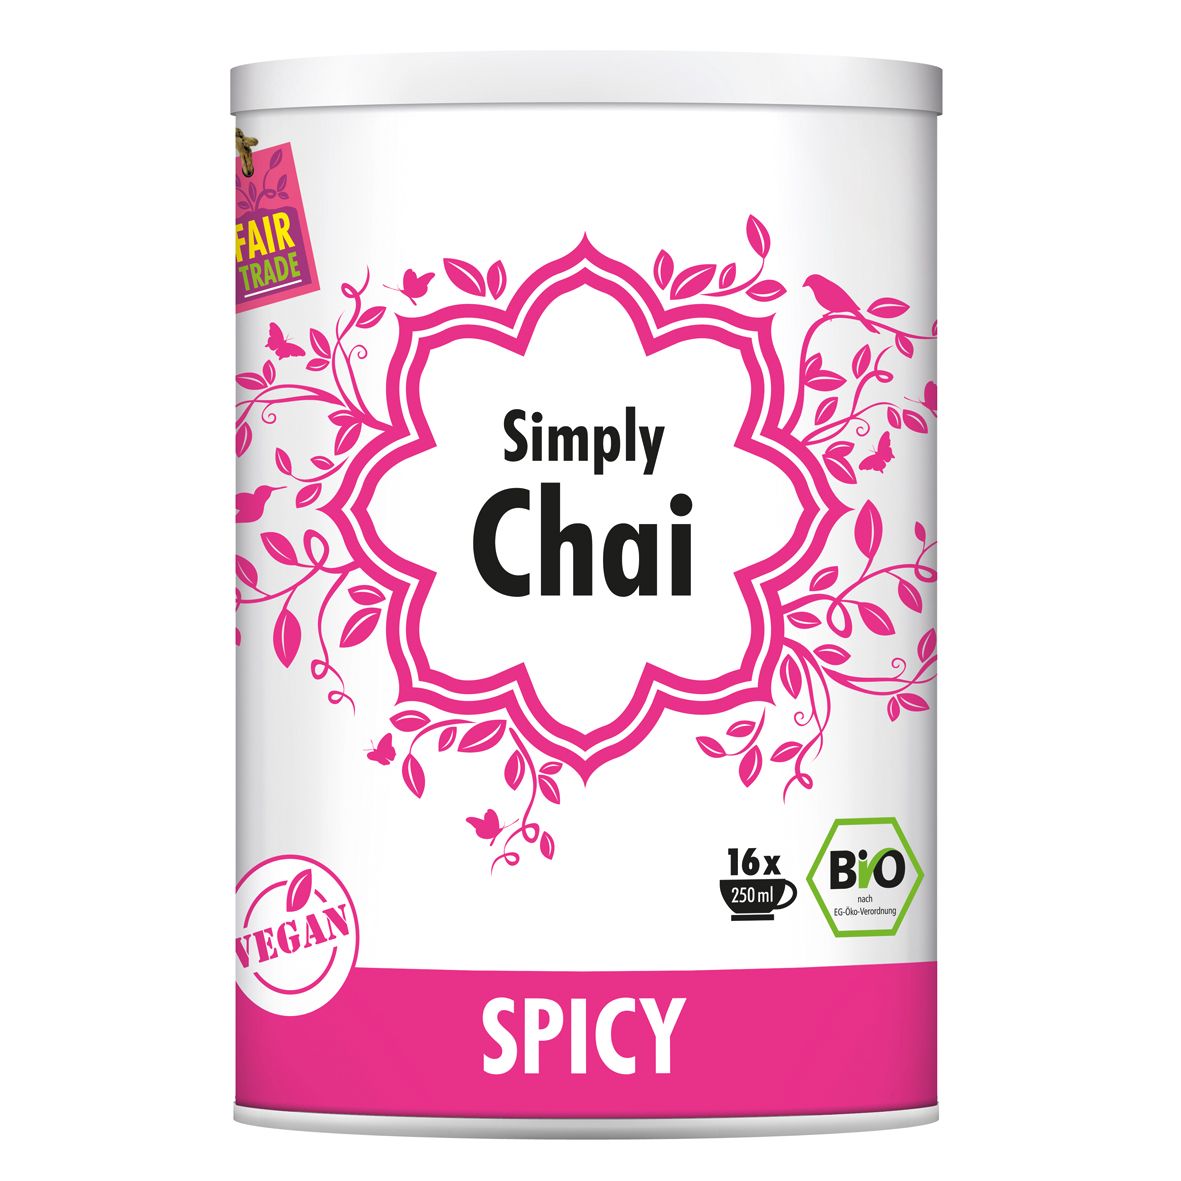 Simply Chai Spicy BIO 250 g Simply Chai